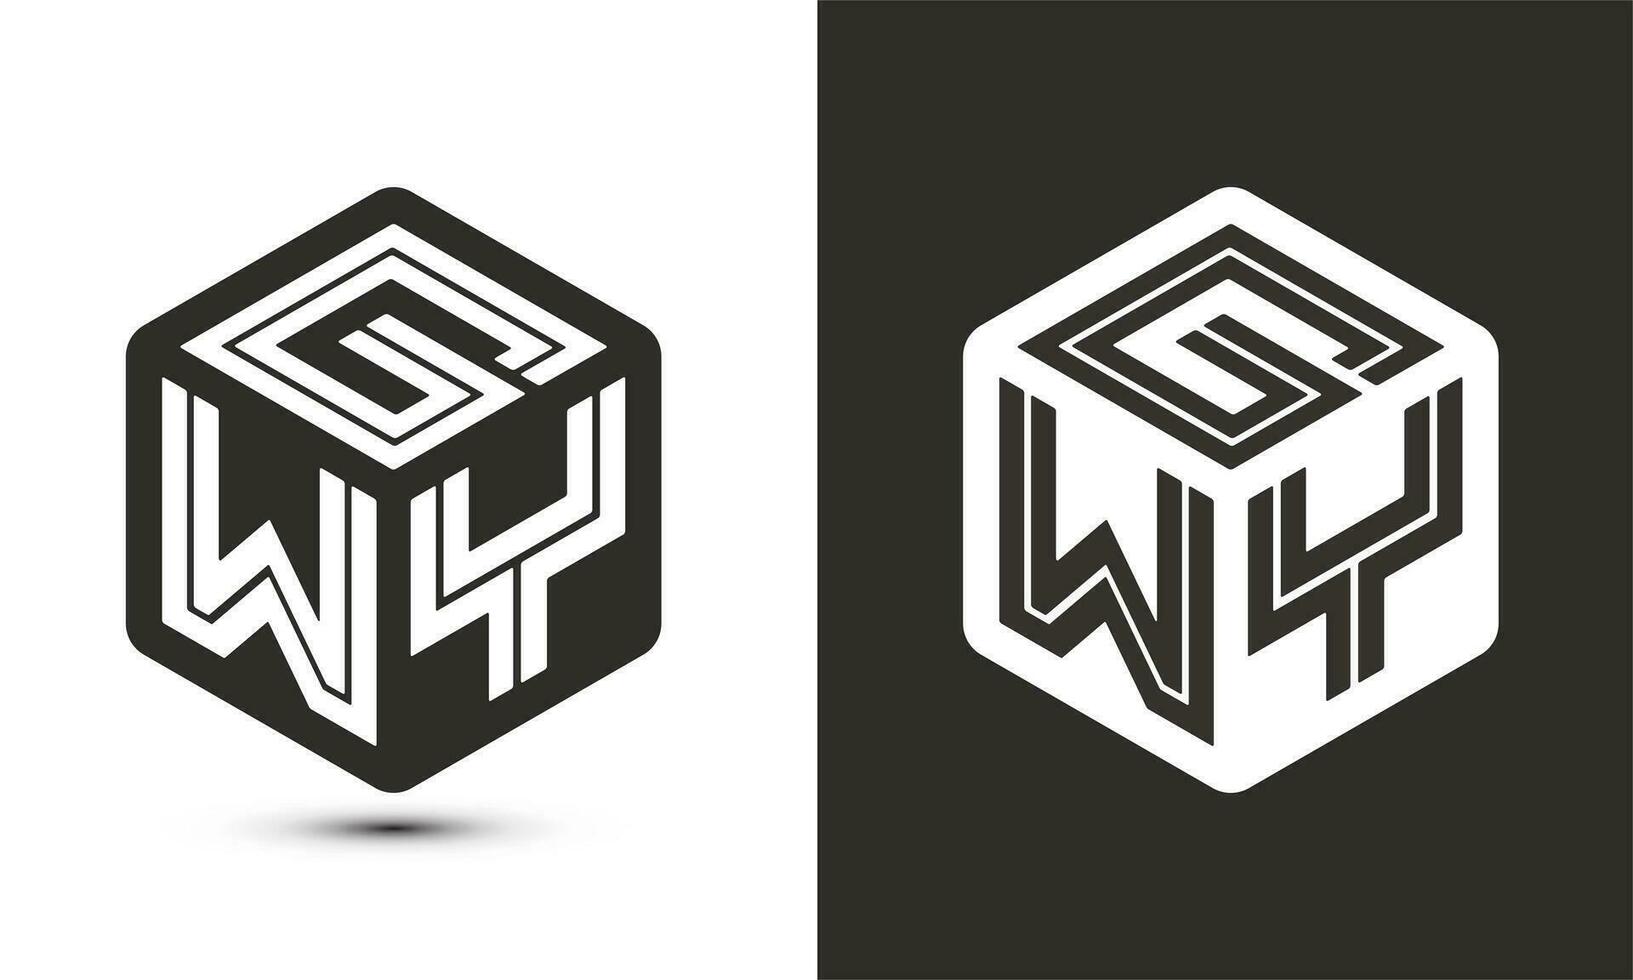 GWY letter logo design with illustrator cube logo, vector logo modern alphabet font overlap style.